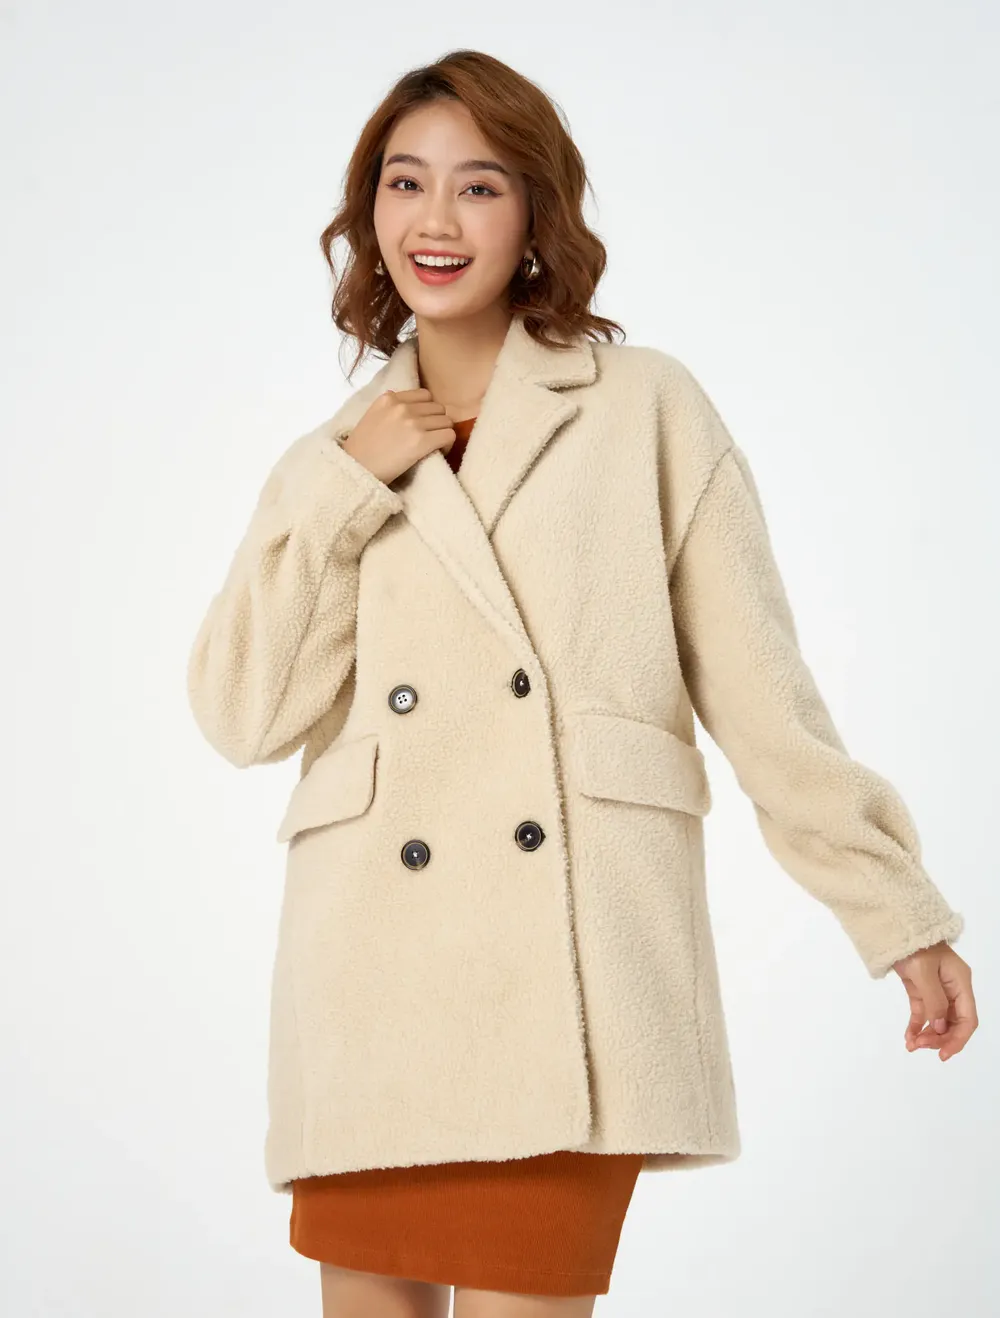 Áo khoác nữ form rộng - áo khoác nỉ có nón 2 lớp chất siêu mịn đẹp -